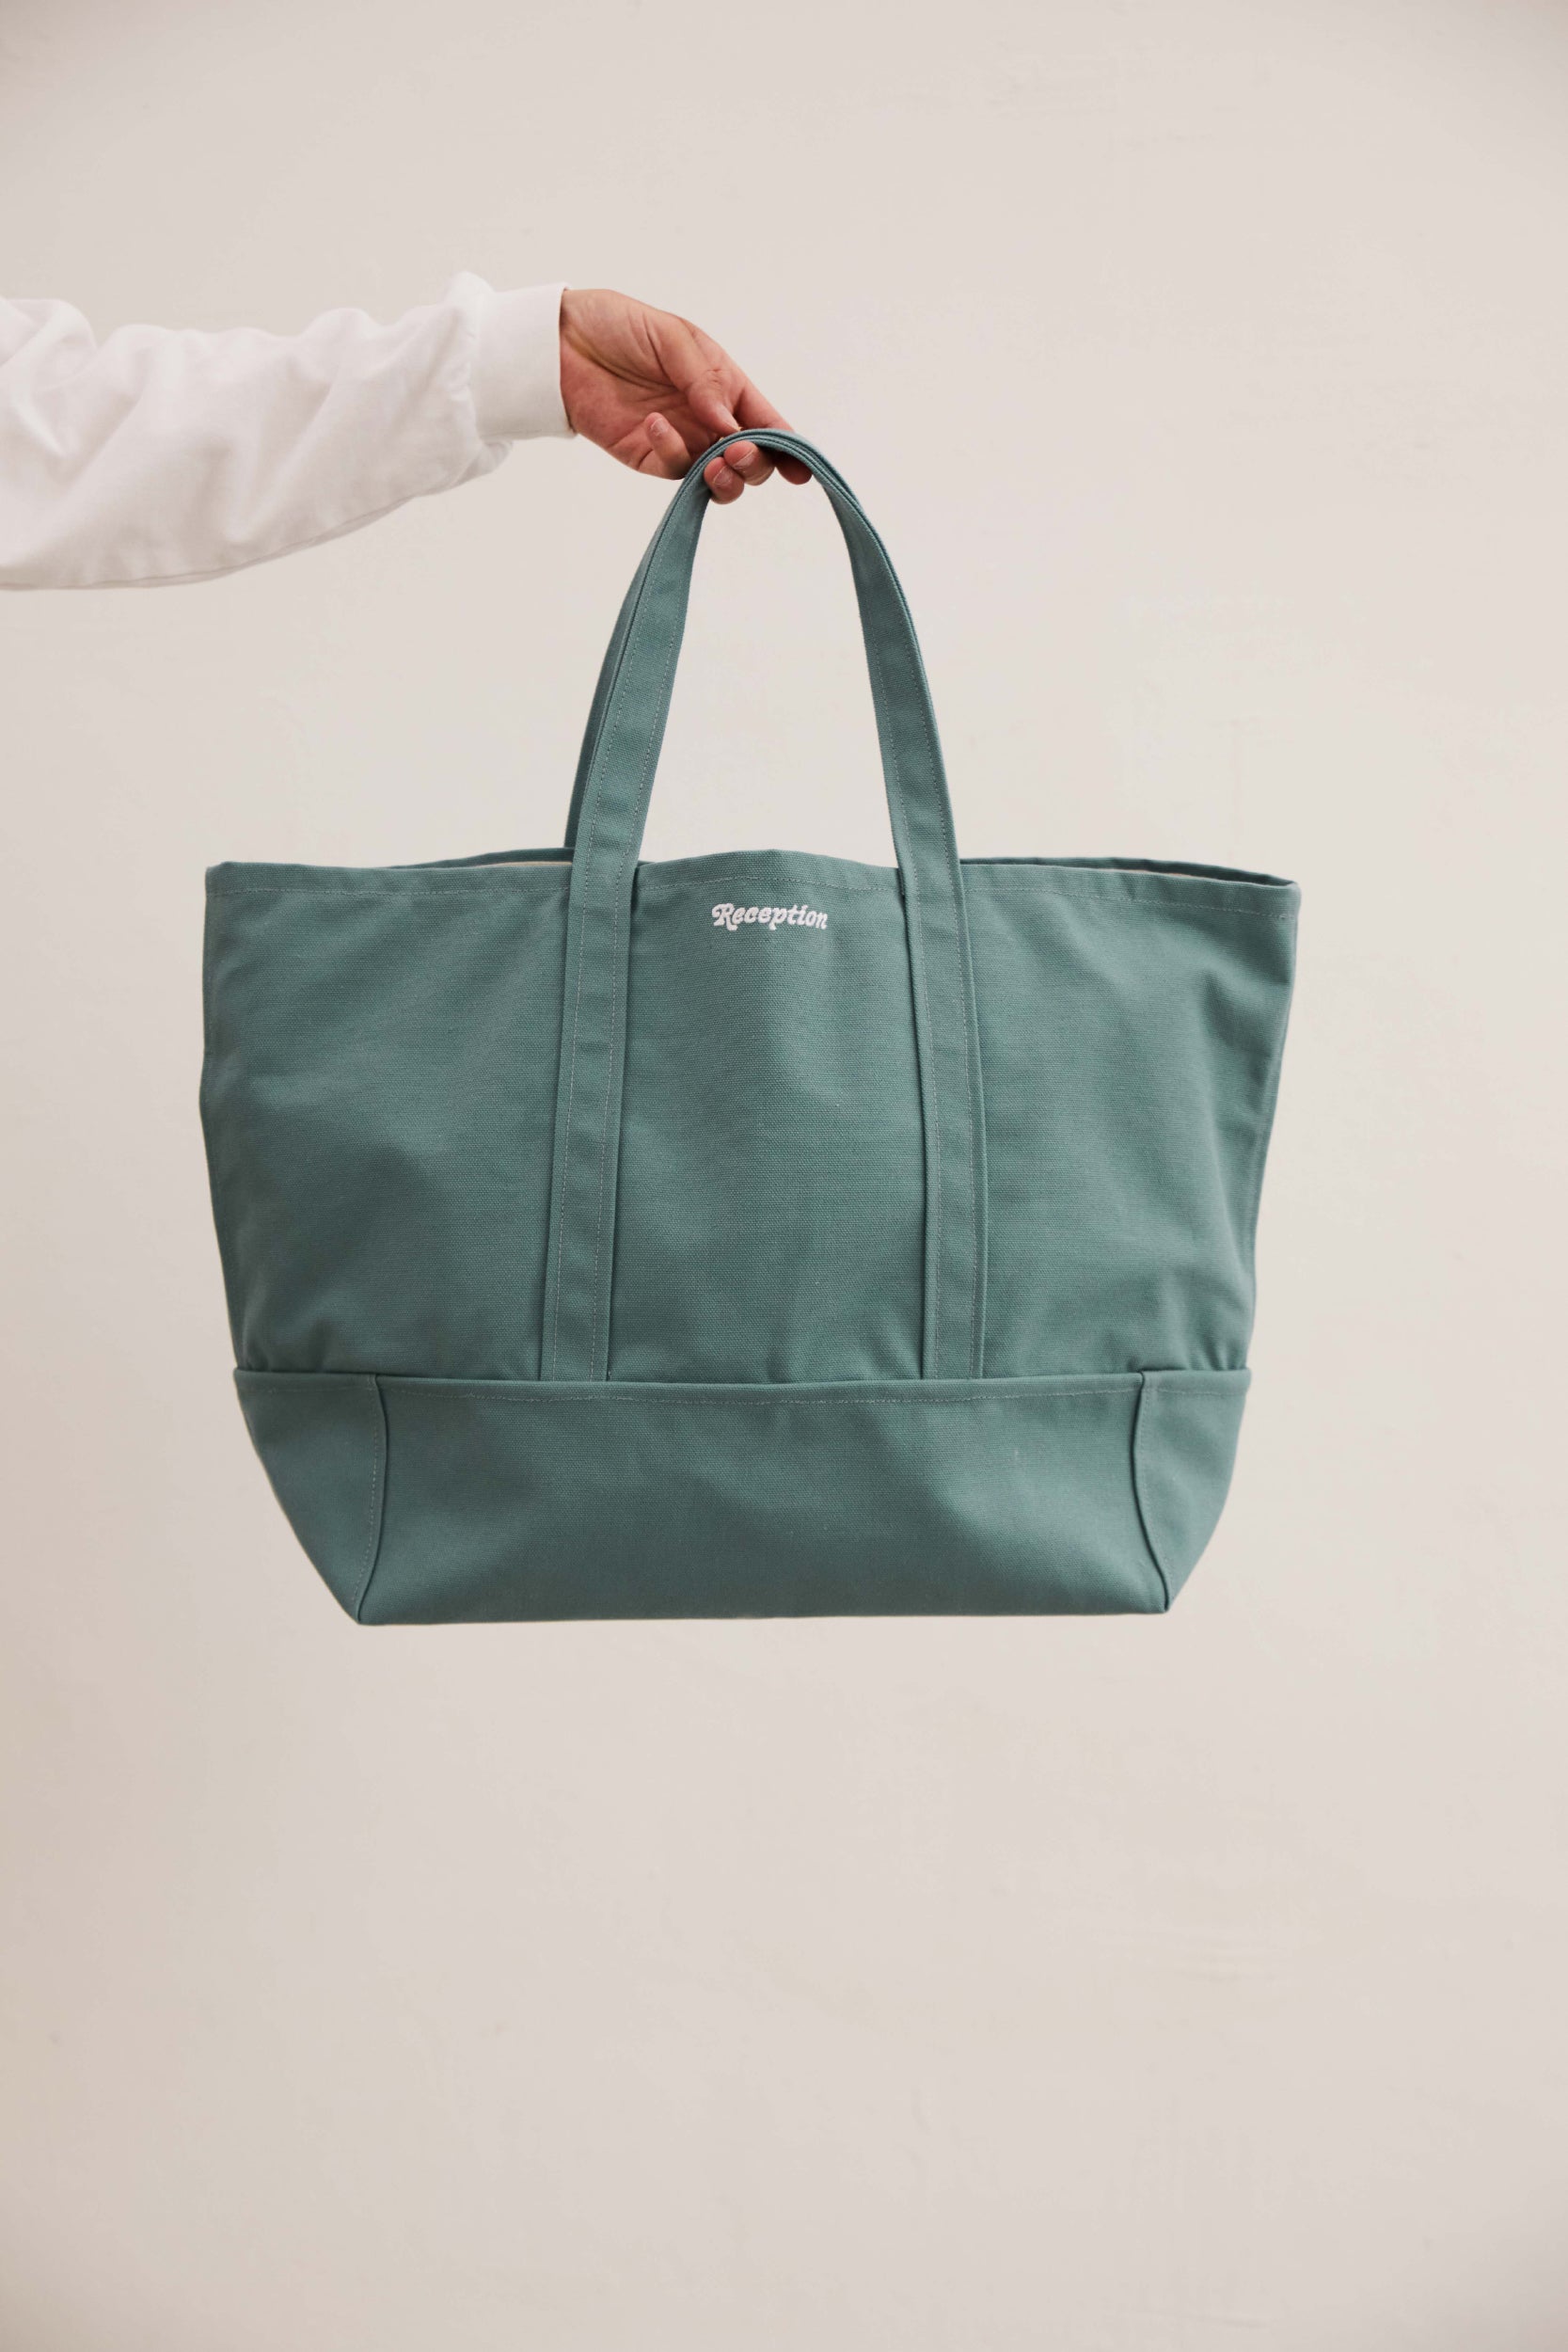 Reception - Accessory - Shopper - Bag - Dusty Green